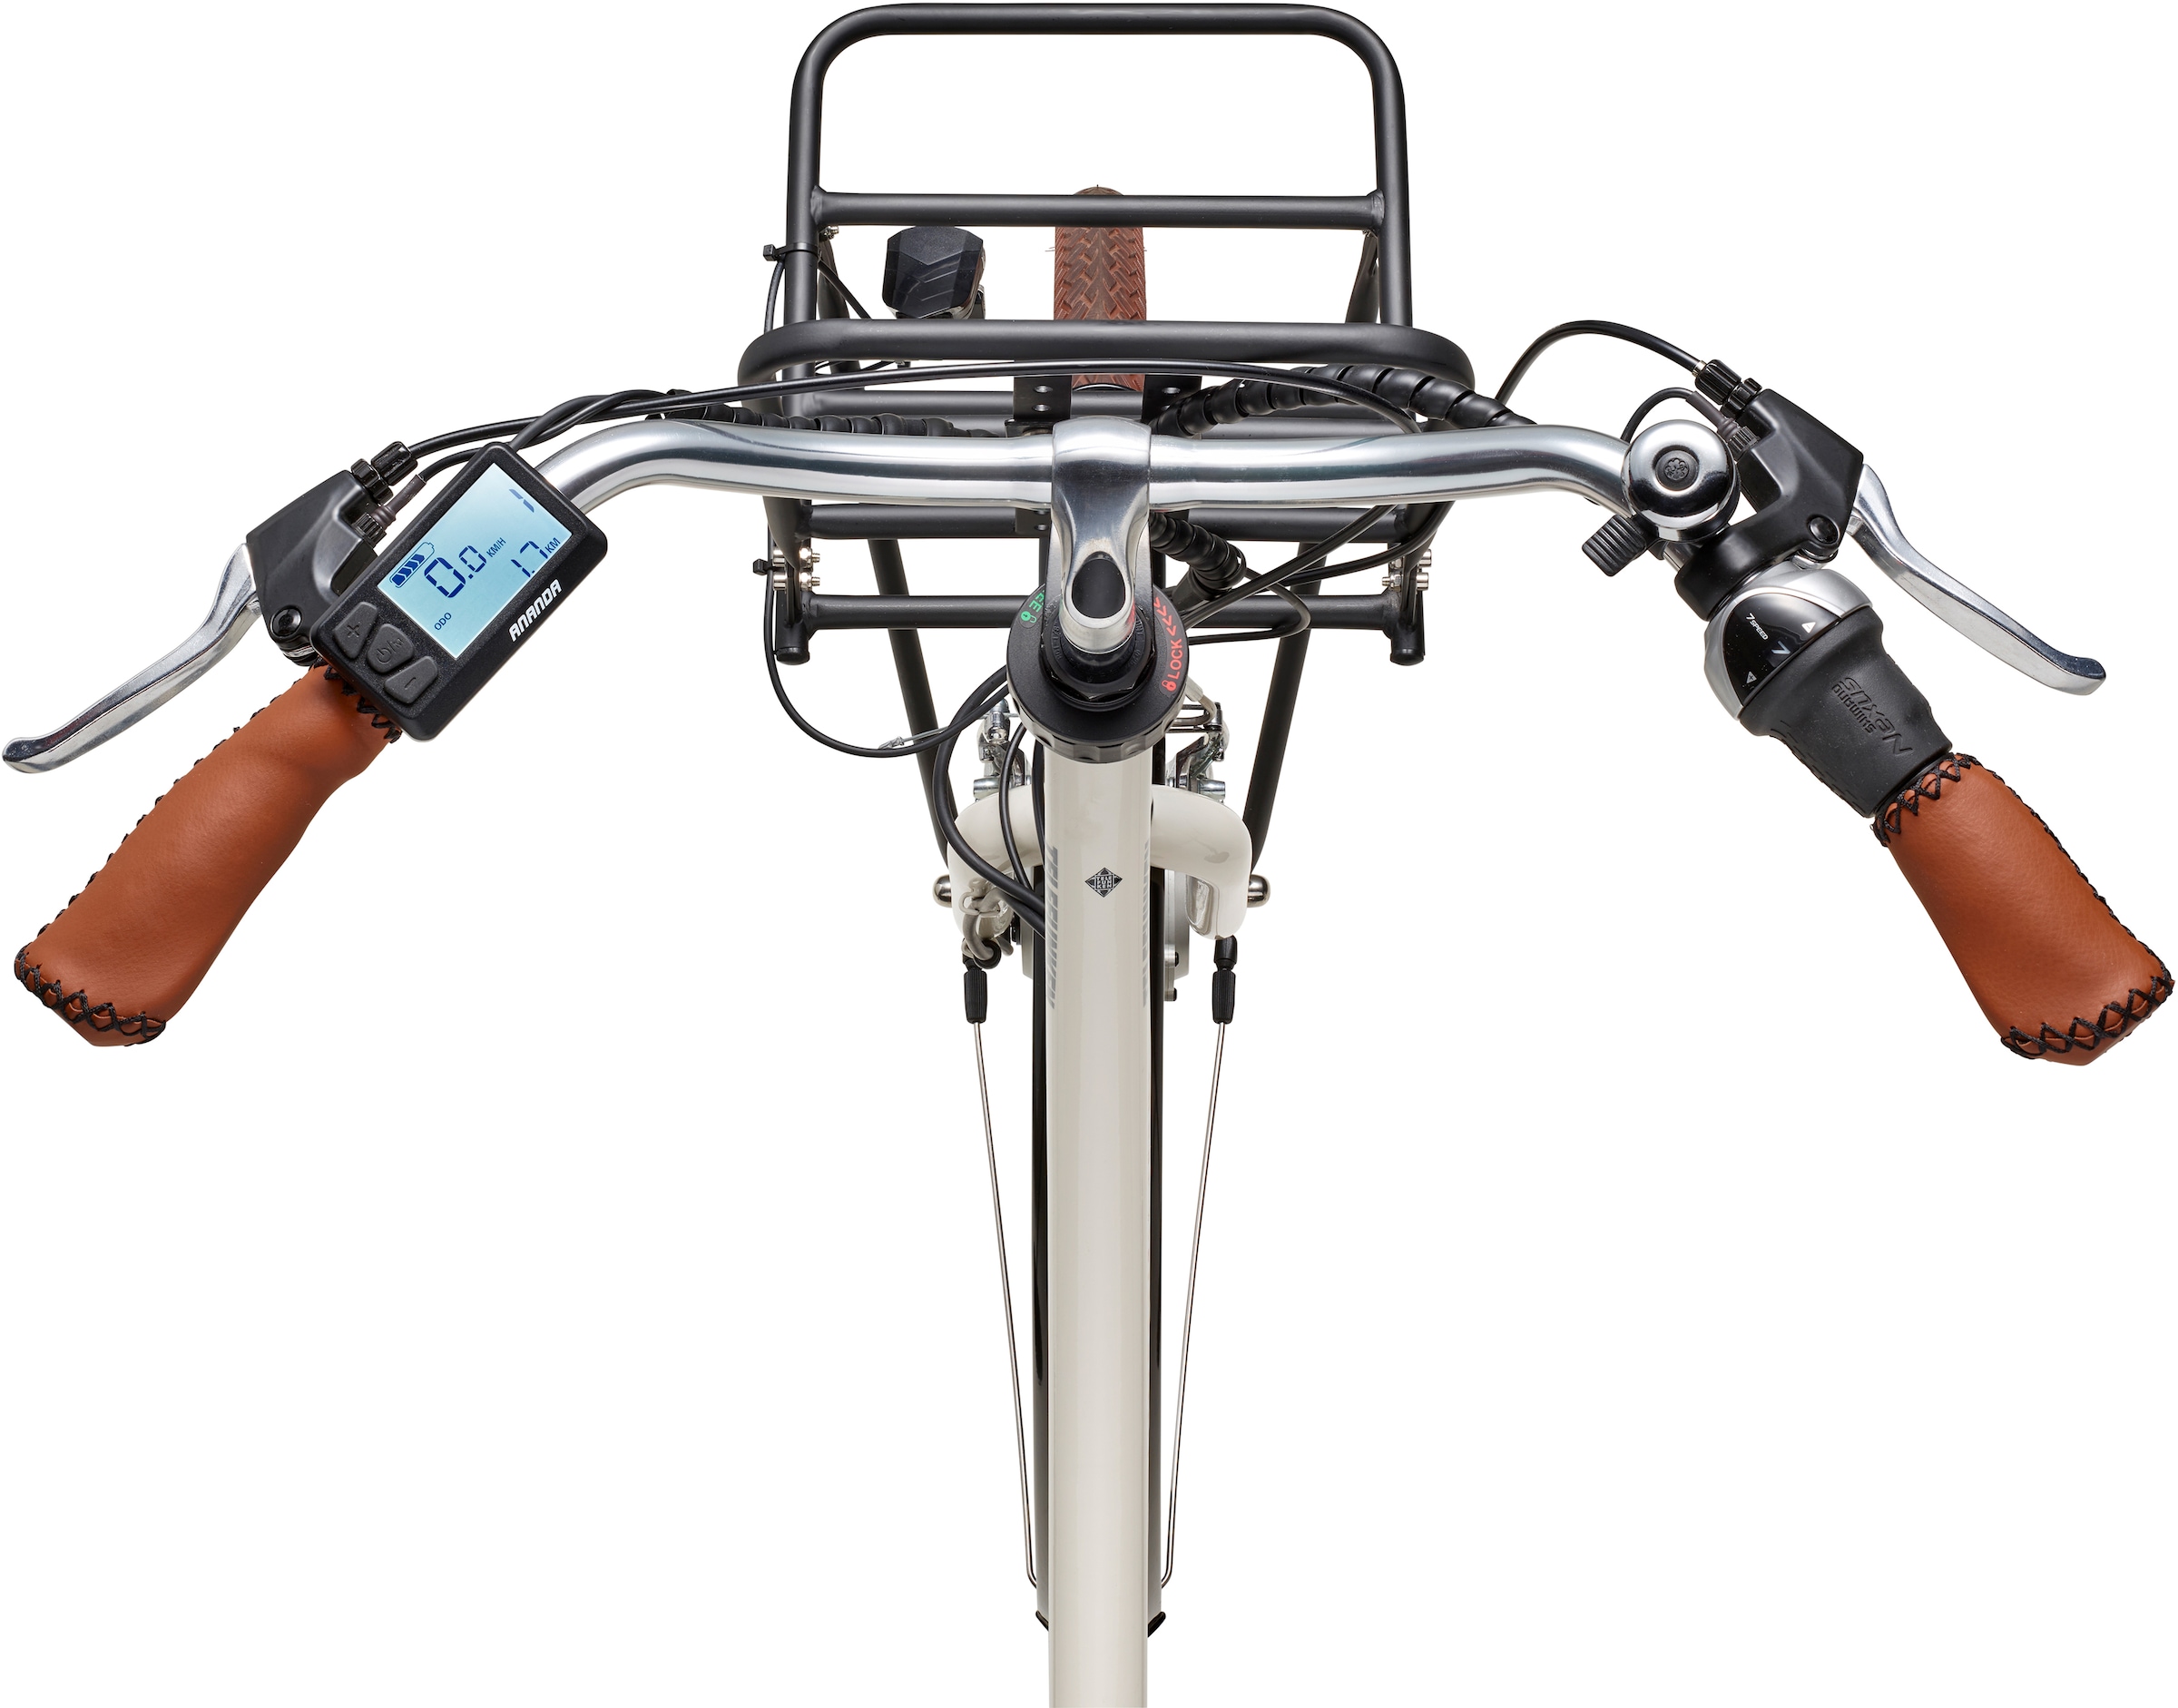 Telefunken E-Bike »Multitalent RT540«, 7 Gang, Shimano, Nexus, Frontmotor 250 W, Pedelec